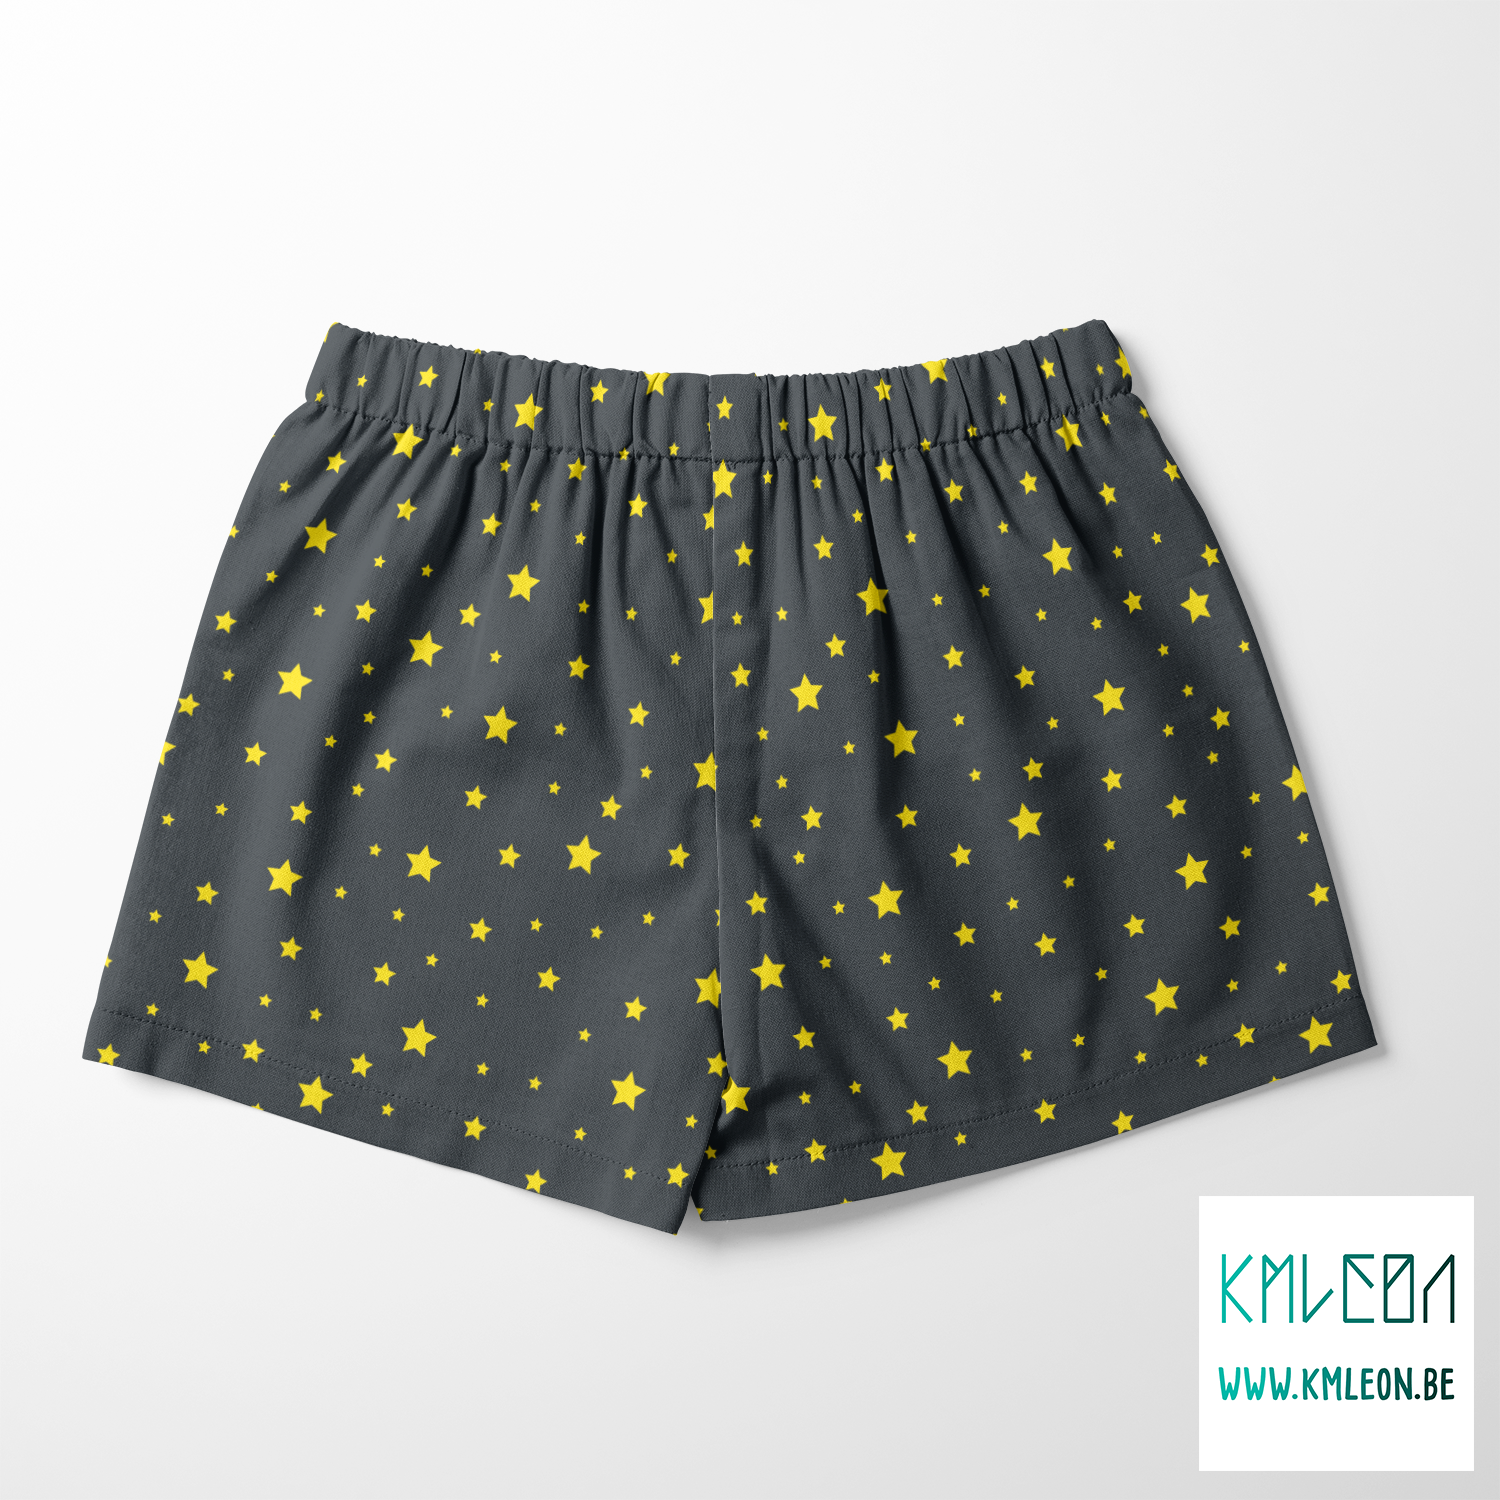 Yellow stars fabric